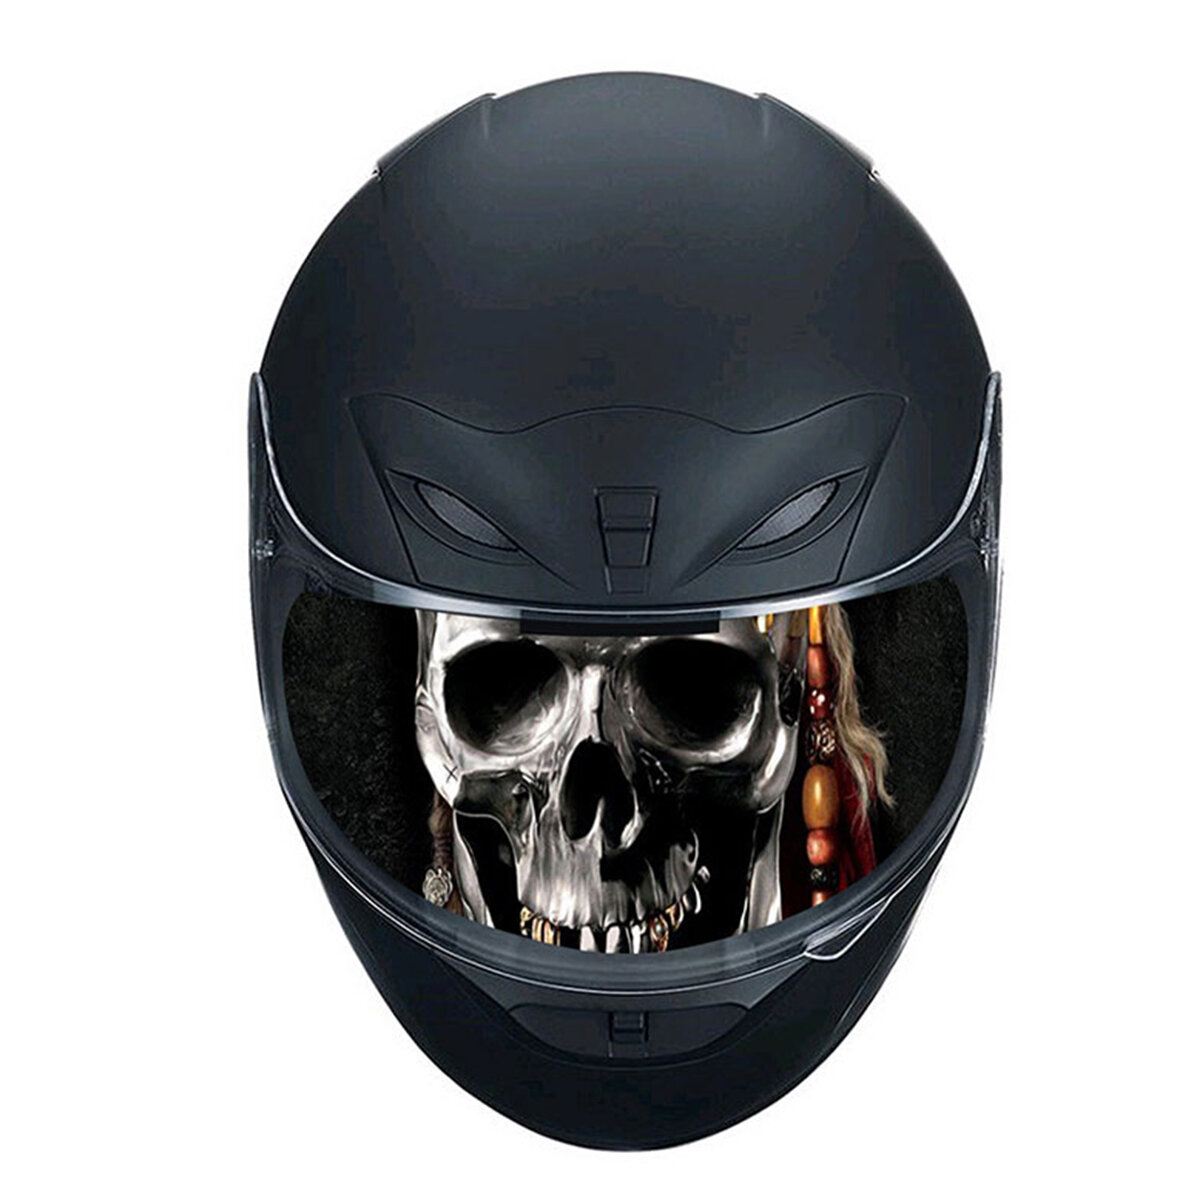 Detachable motorcycle racing helmet lens visor sticker decals diy